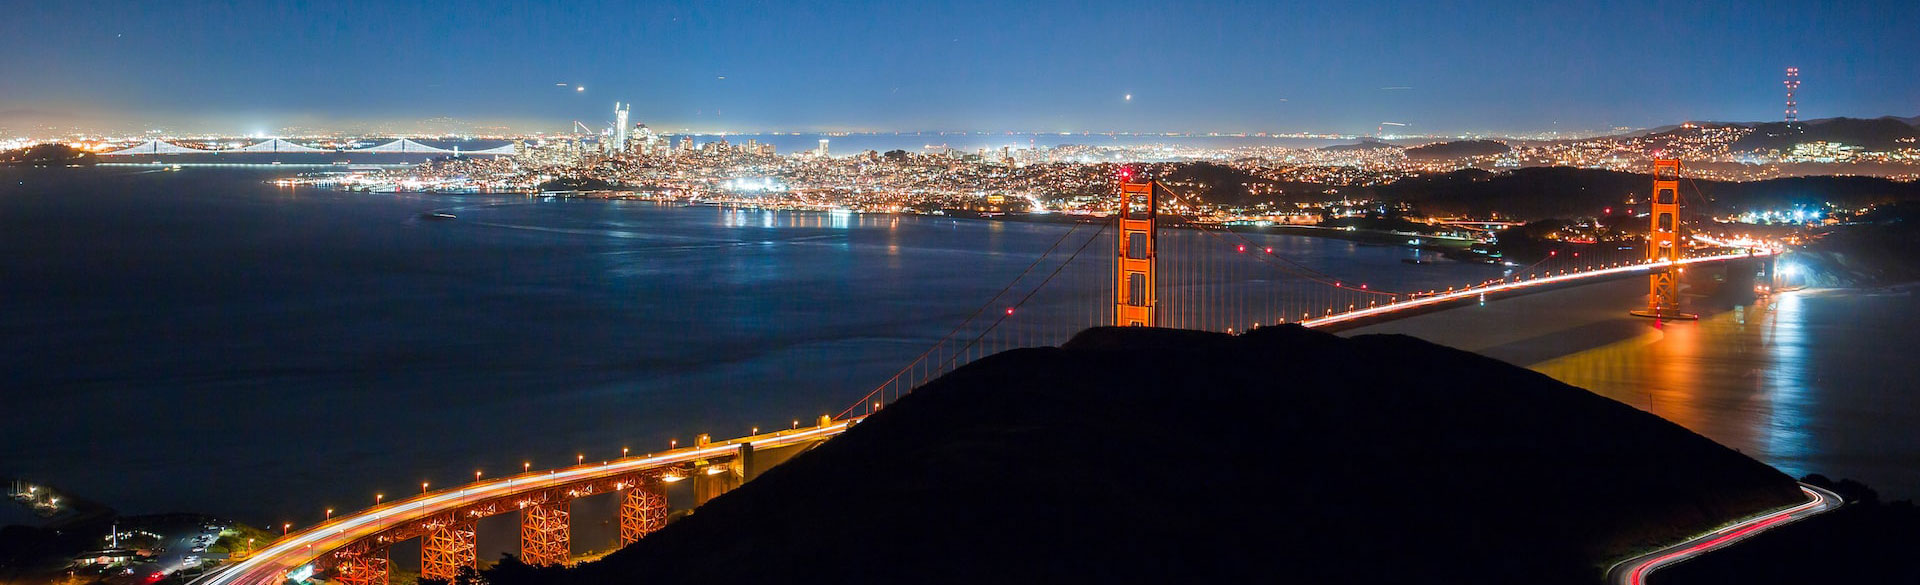 מפרץ סן פרנסיסקו וגשר שער הזהב בלילה